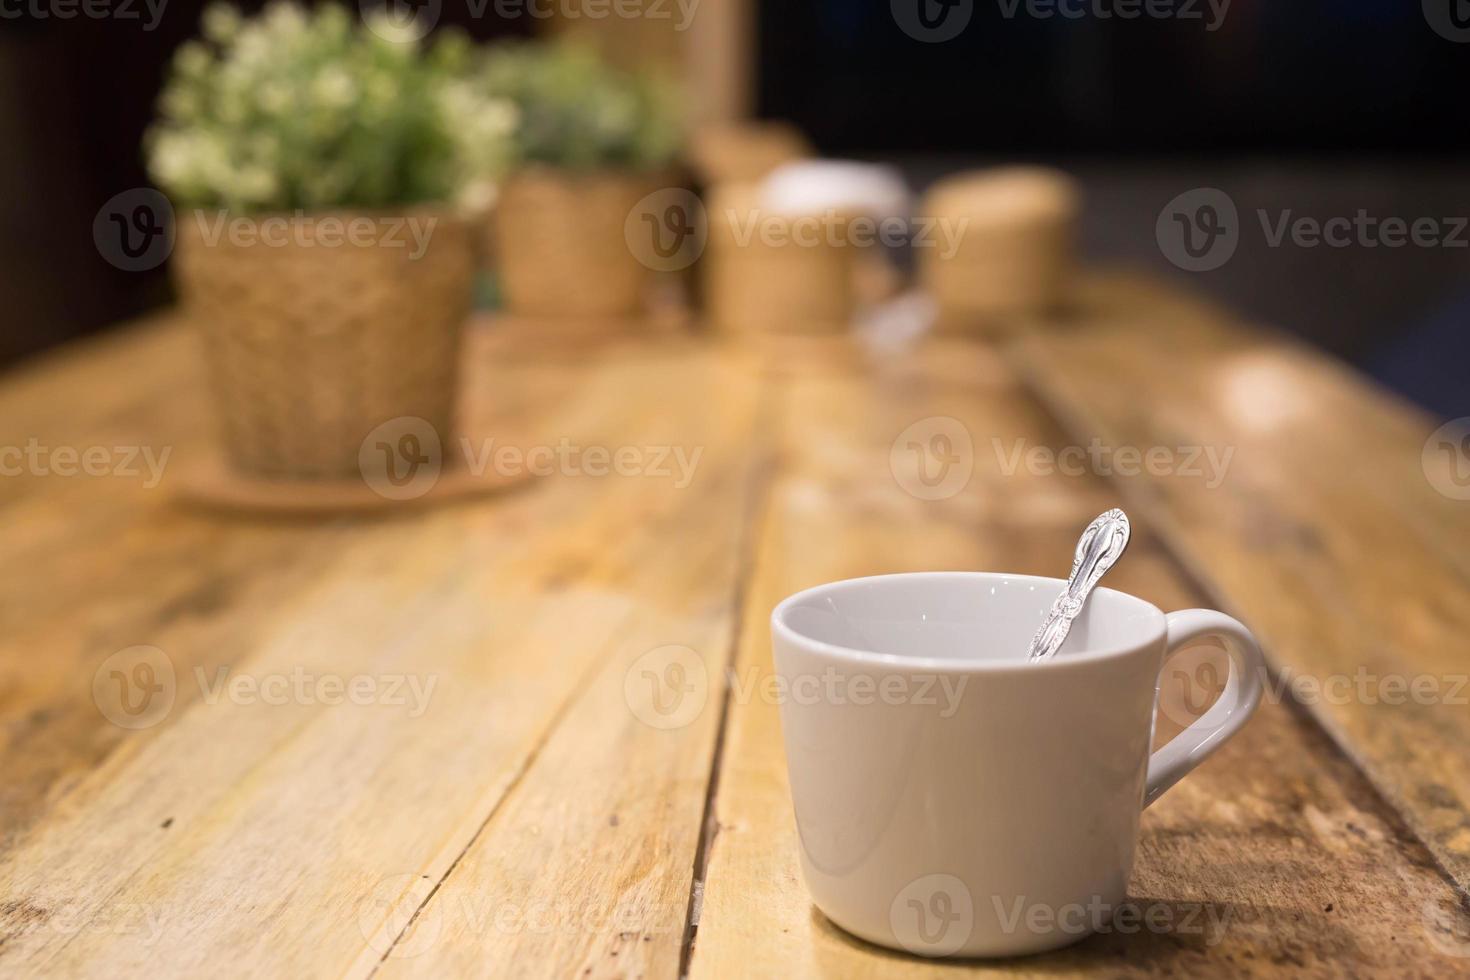 caldo caffè tazza latte macchiato arte con cucchiaio servire pronto per bevanda nel bar su di legno tavolo caffè negozio. partire copia spazio vuoto per Scrivi il lato testo. morbido messa a fuoco. foto